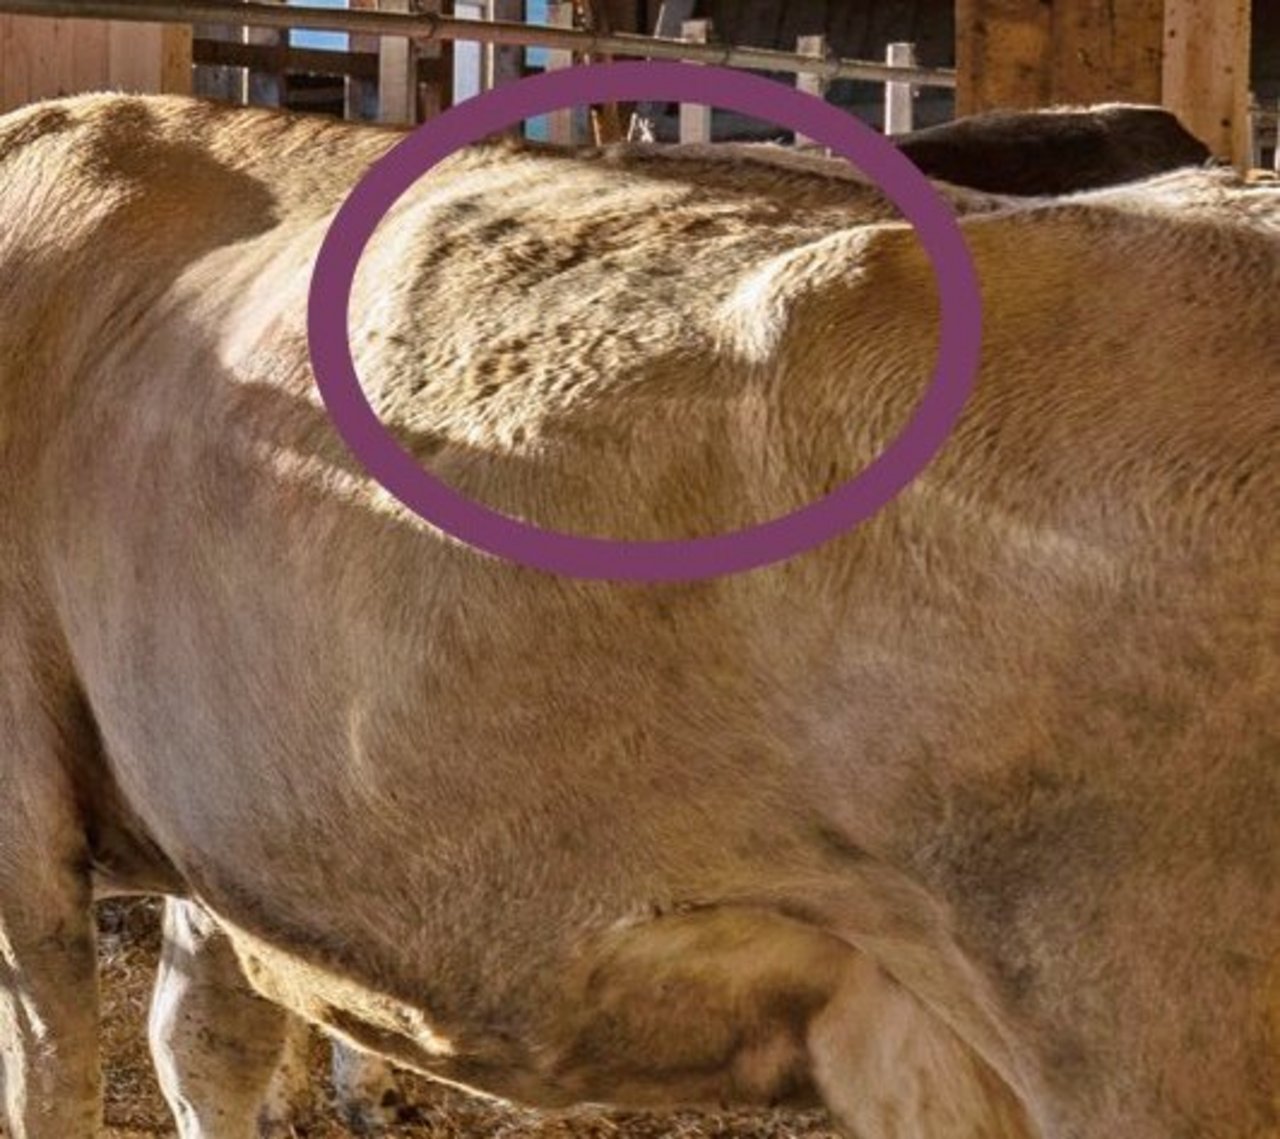 Bei dieser Kuh ist der Pansen schön gefüllt, was auf ein gutes Fütterungsmanagement hinweist. Die Hungergrube auf der linken Kuhseite sollte nicht eingefallen sein. 